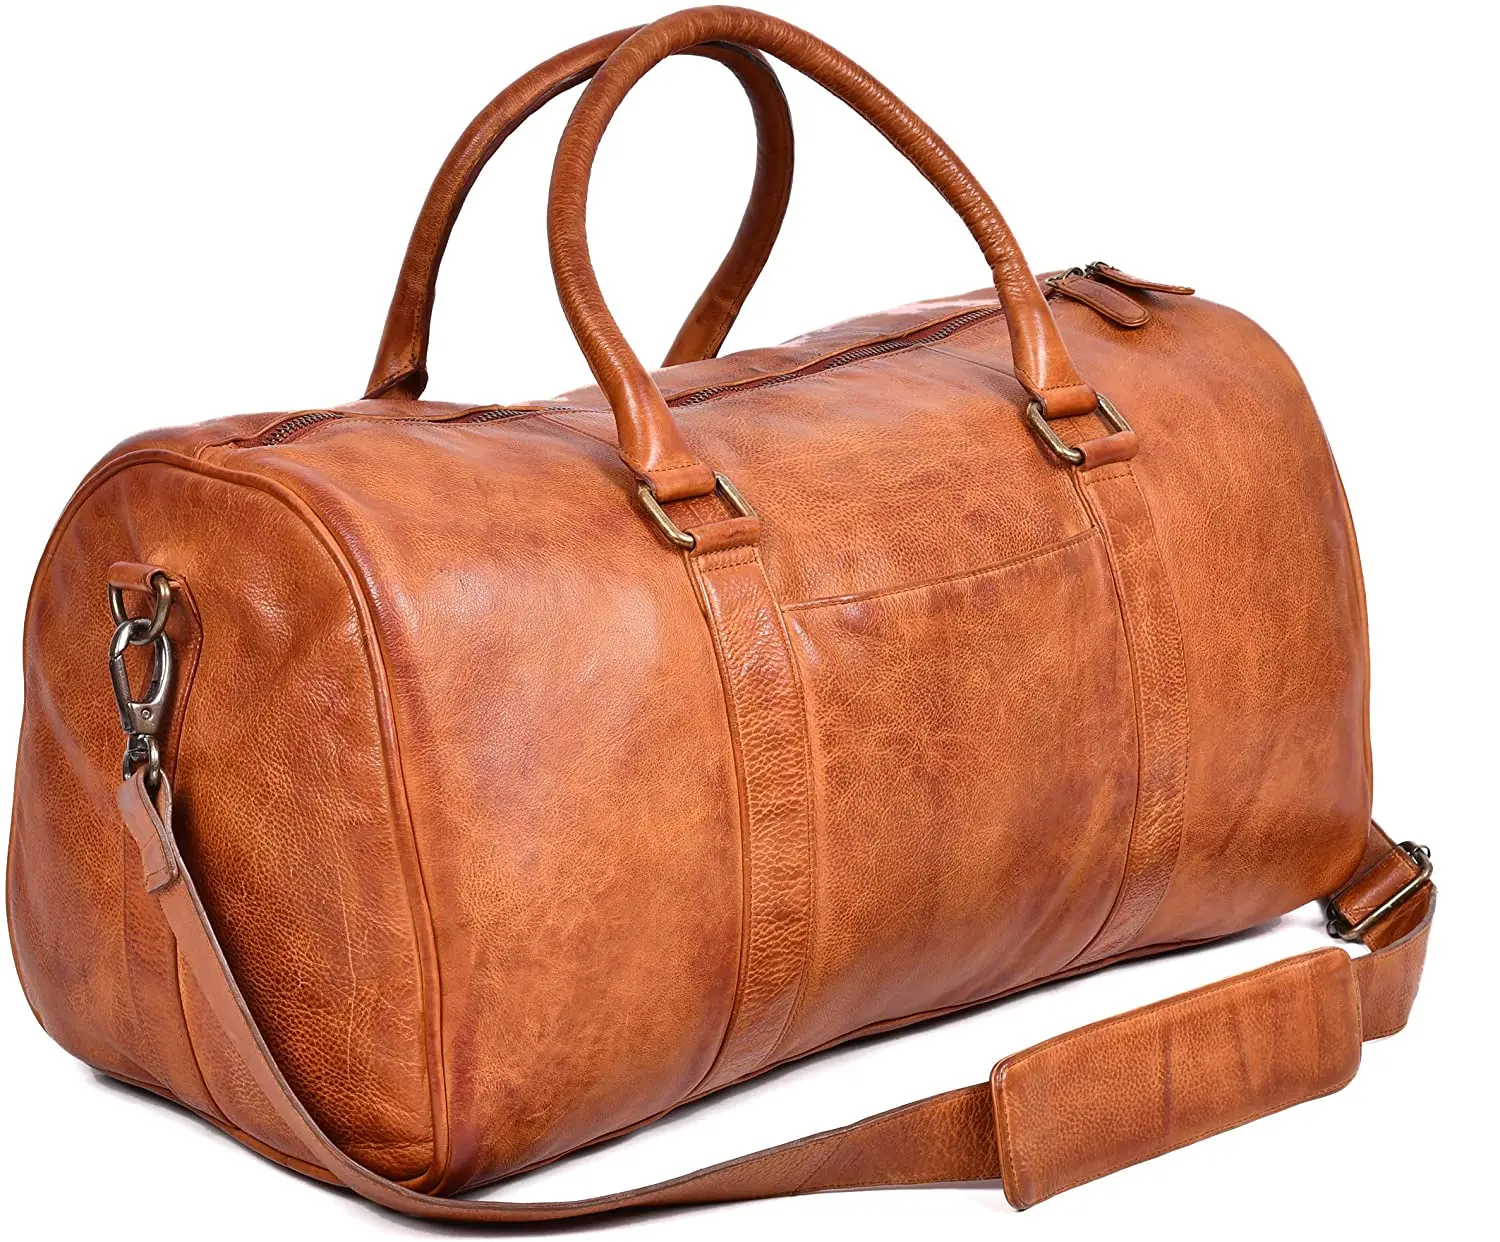 Vintage Leather Luggage Bag Shoulder Weekender Travel Overnight Tan Bag